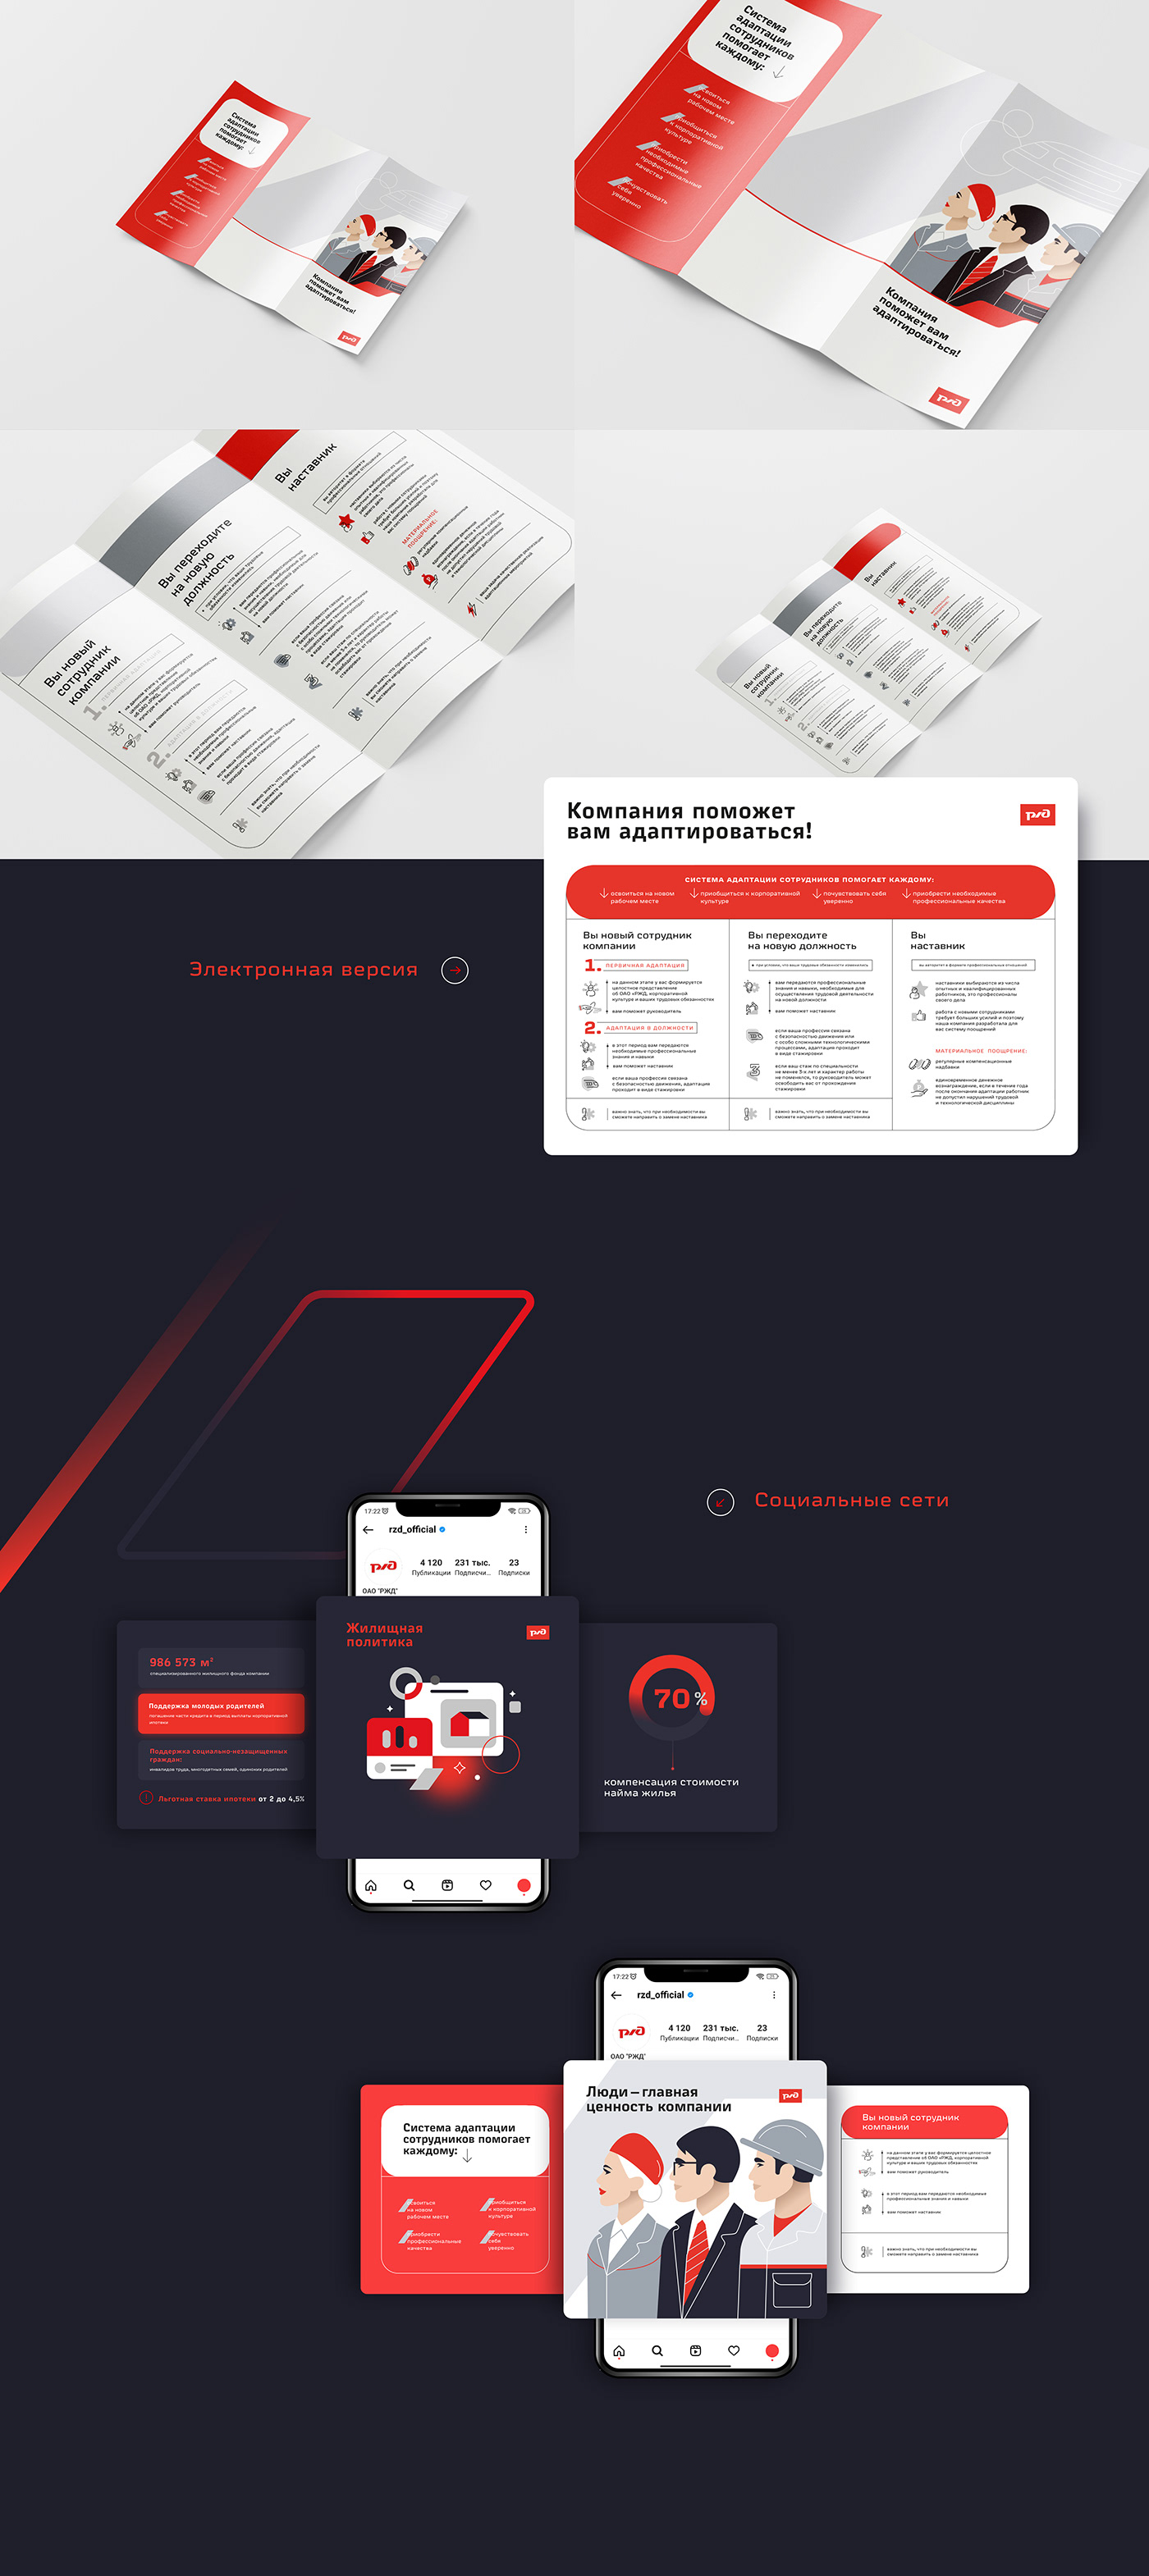 Brand Design identity infographic presentation Russia slides train инфографика презентация Россия